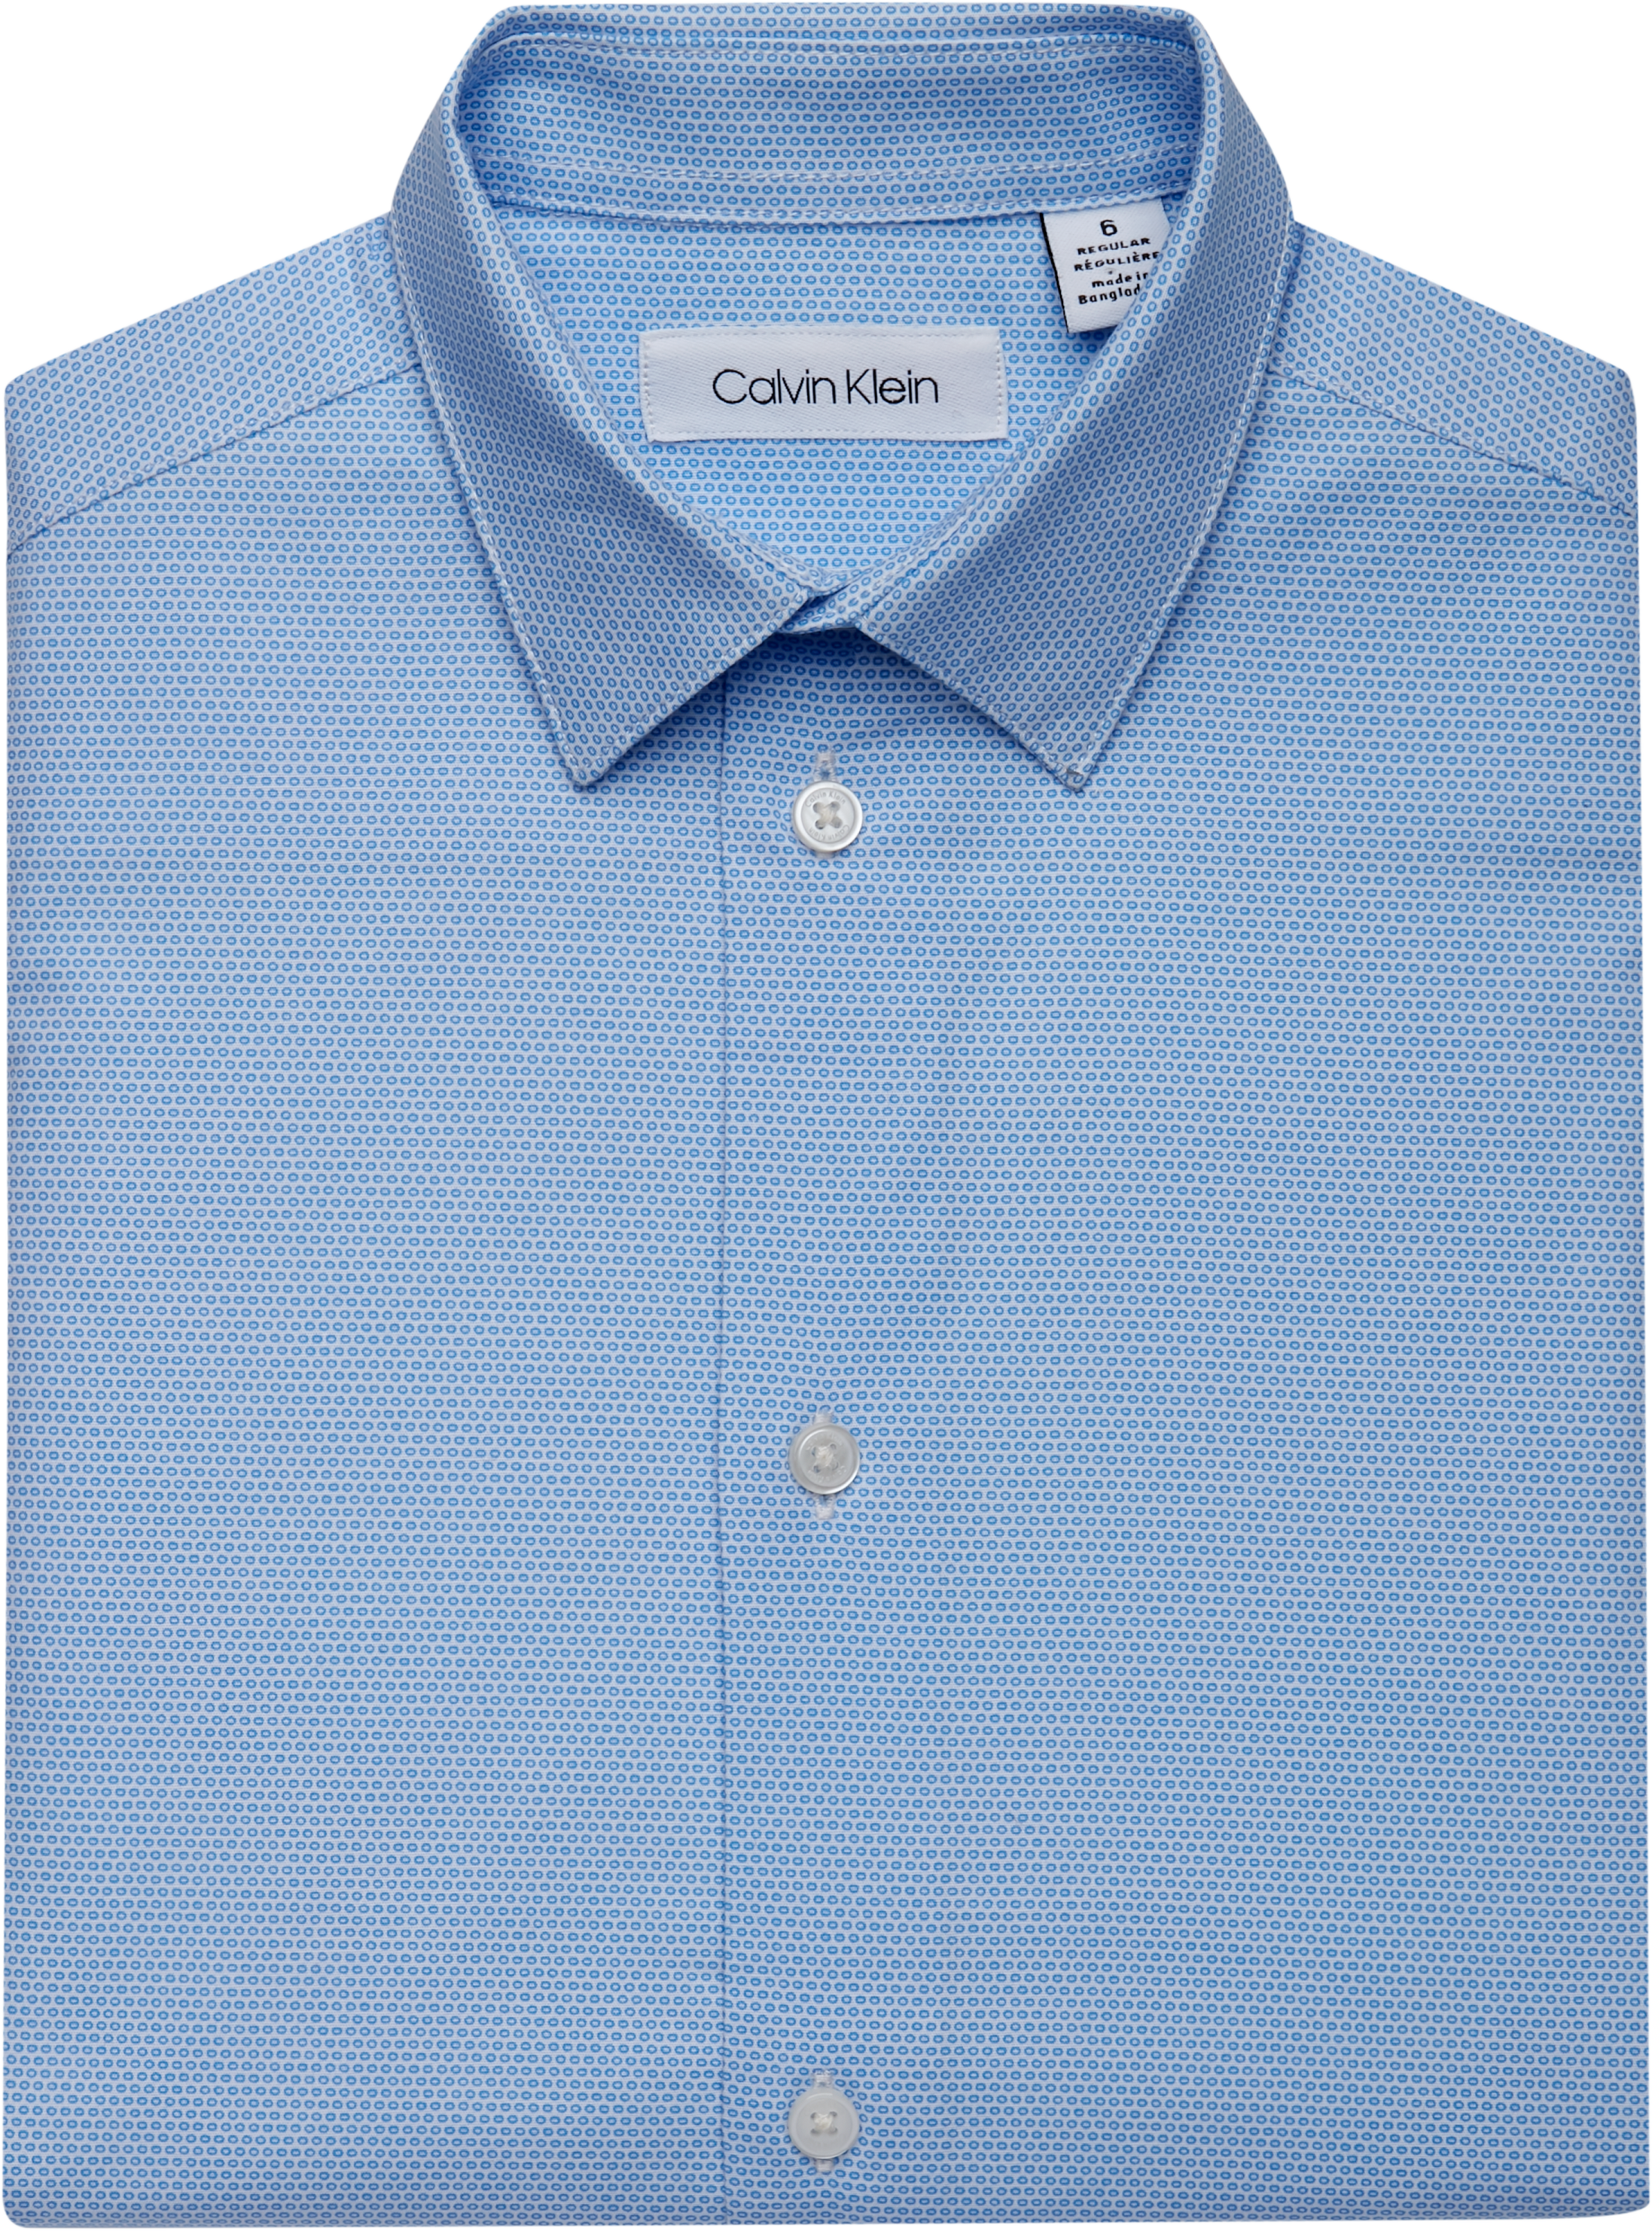 calvin klein blue shirt